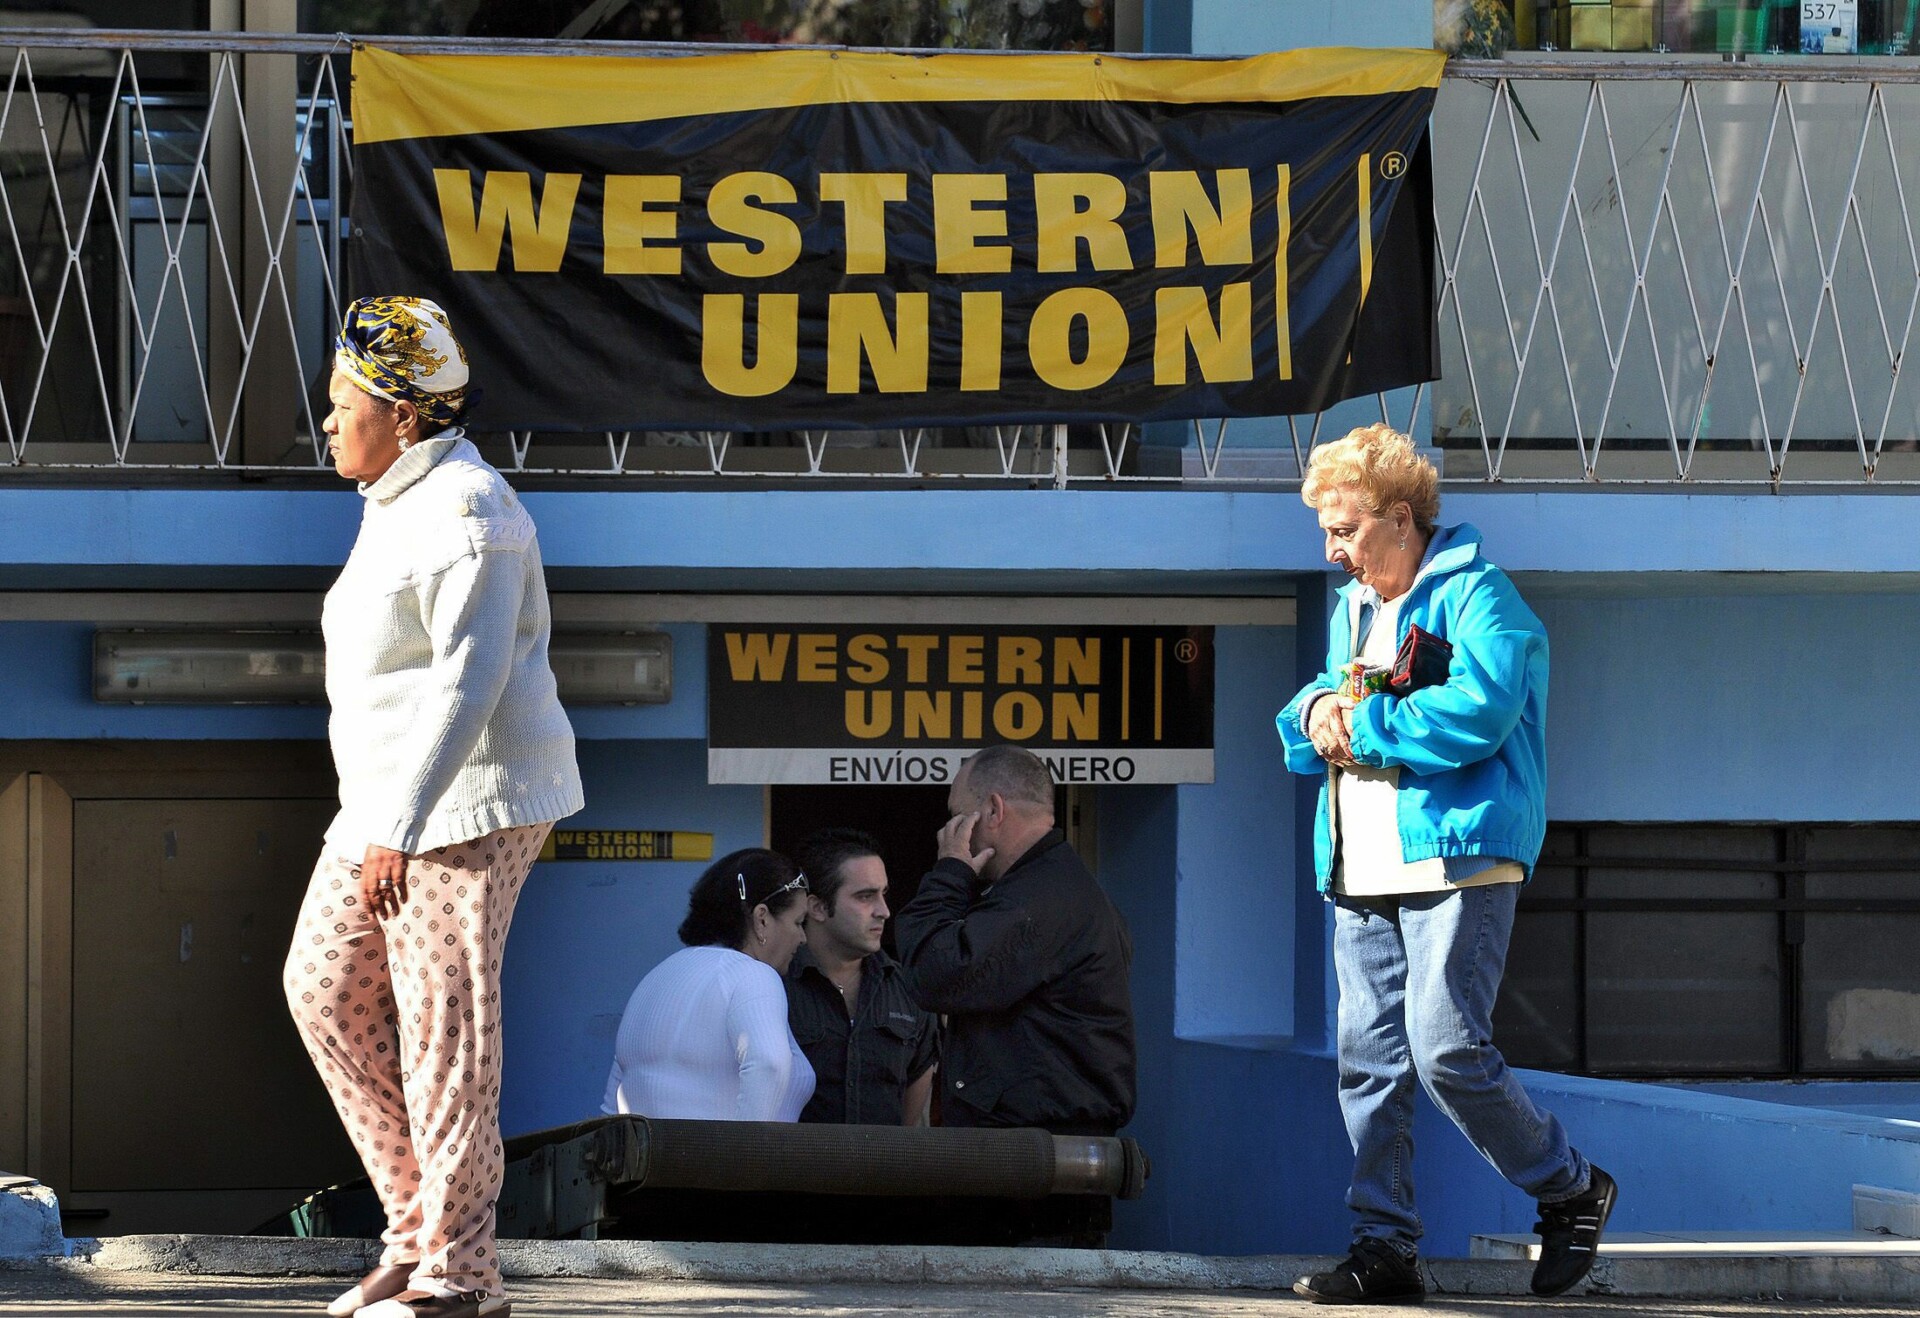 ΗΠΑ: Η Western Union επαναφέρει τις δραστηριότητές της στο Αφγανιστάν